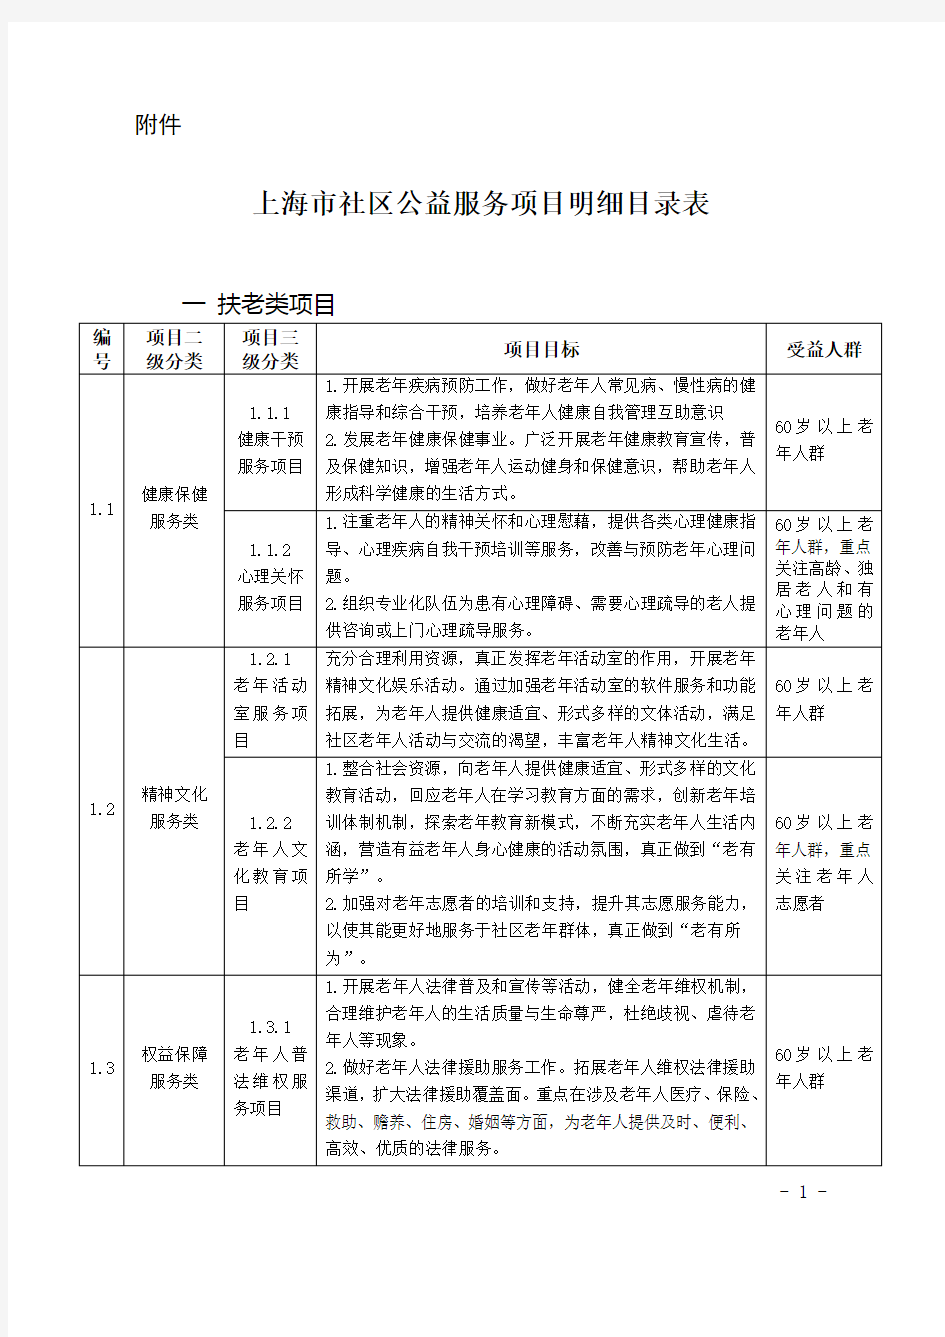 上海市社区公益服务项目明细目录表.doc-附件